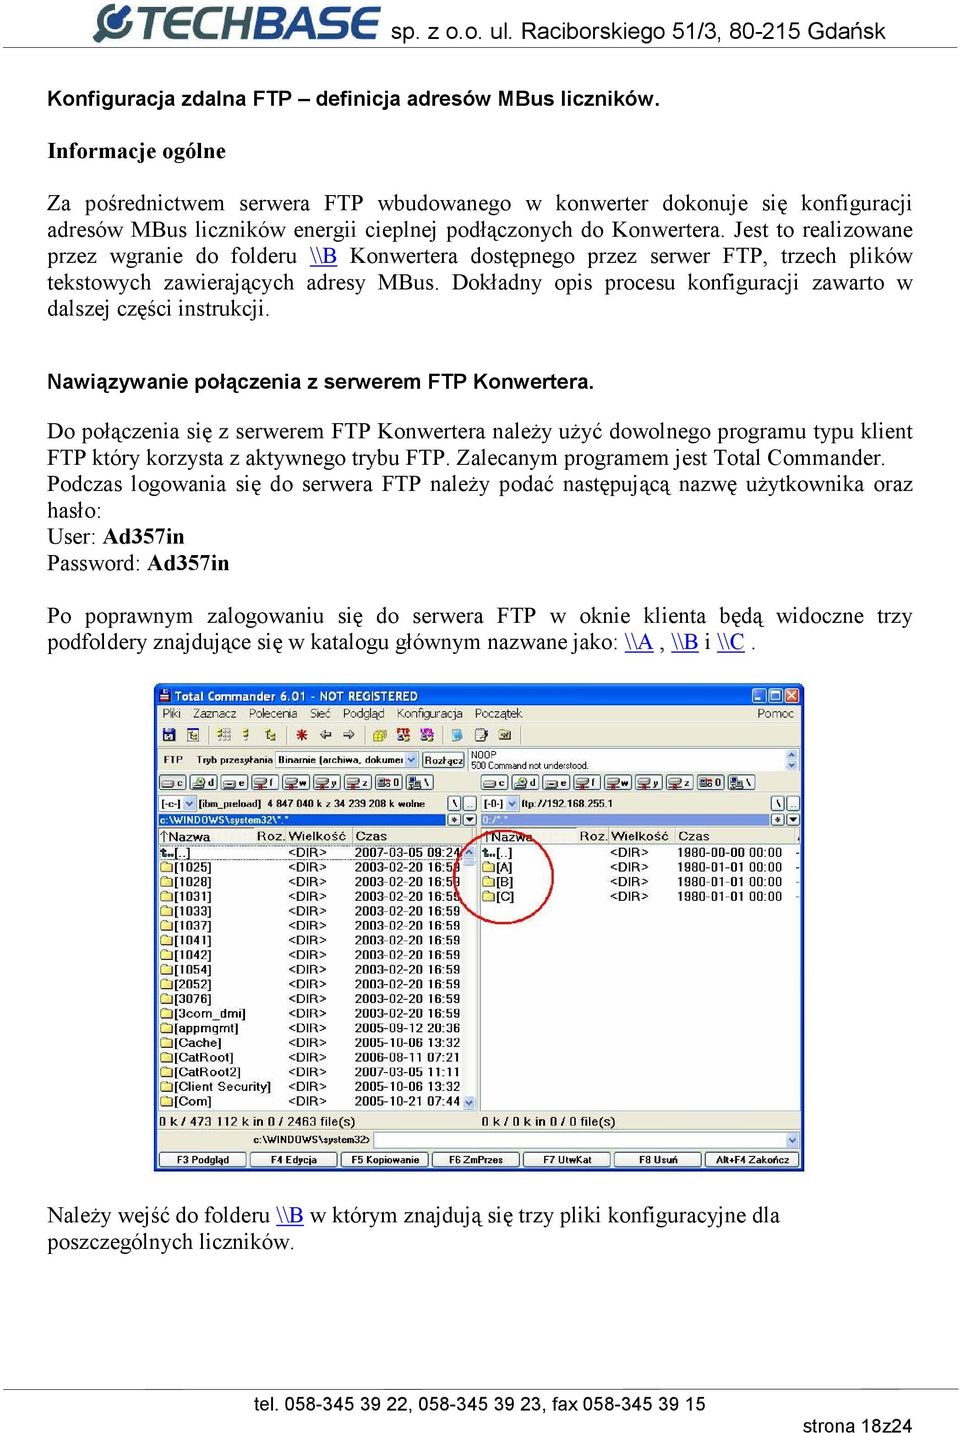 Jest to realizowane przez wgranie do folderu \\B Konwertera dostępnego przez serwer FTP, trzech plików tekstowych zawierających adresy MBus.